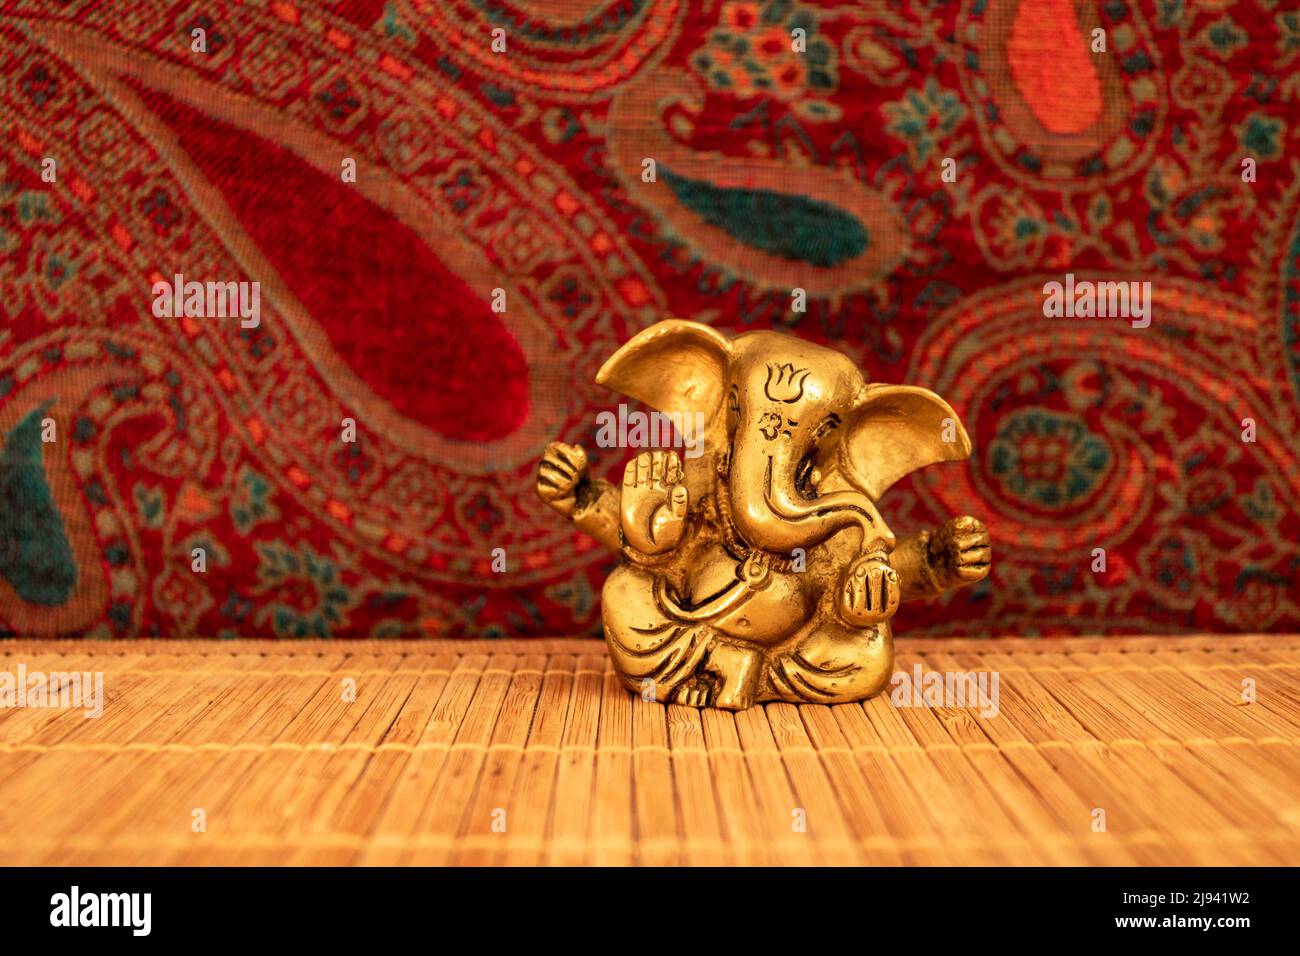 Statue de ganesha dorée sur tapis de bois avec fond coloré, gros plan. Concept de méditation et de pleine conscience Banque D'Images